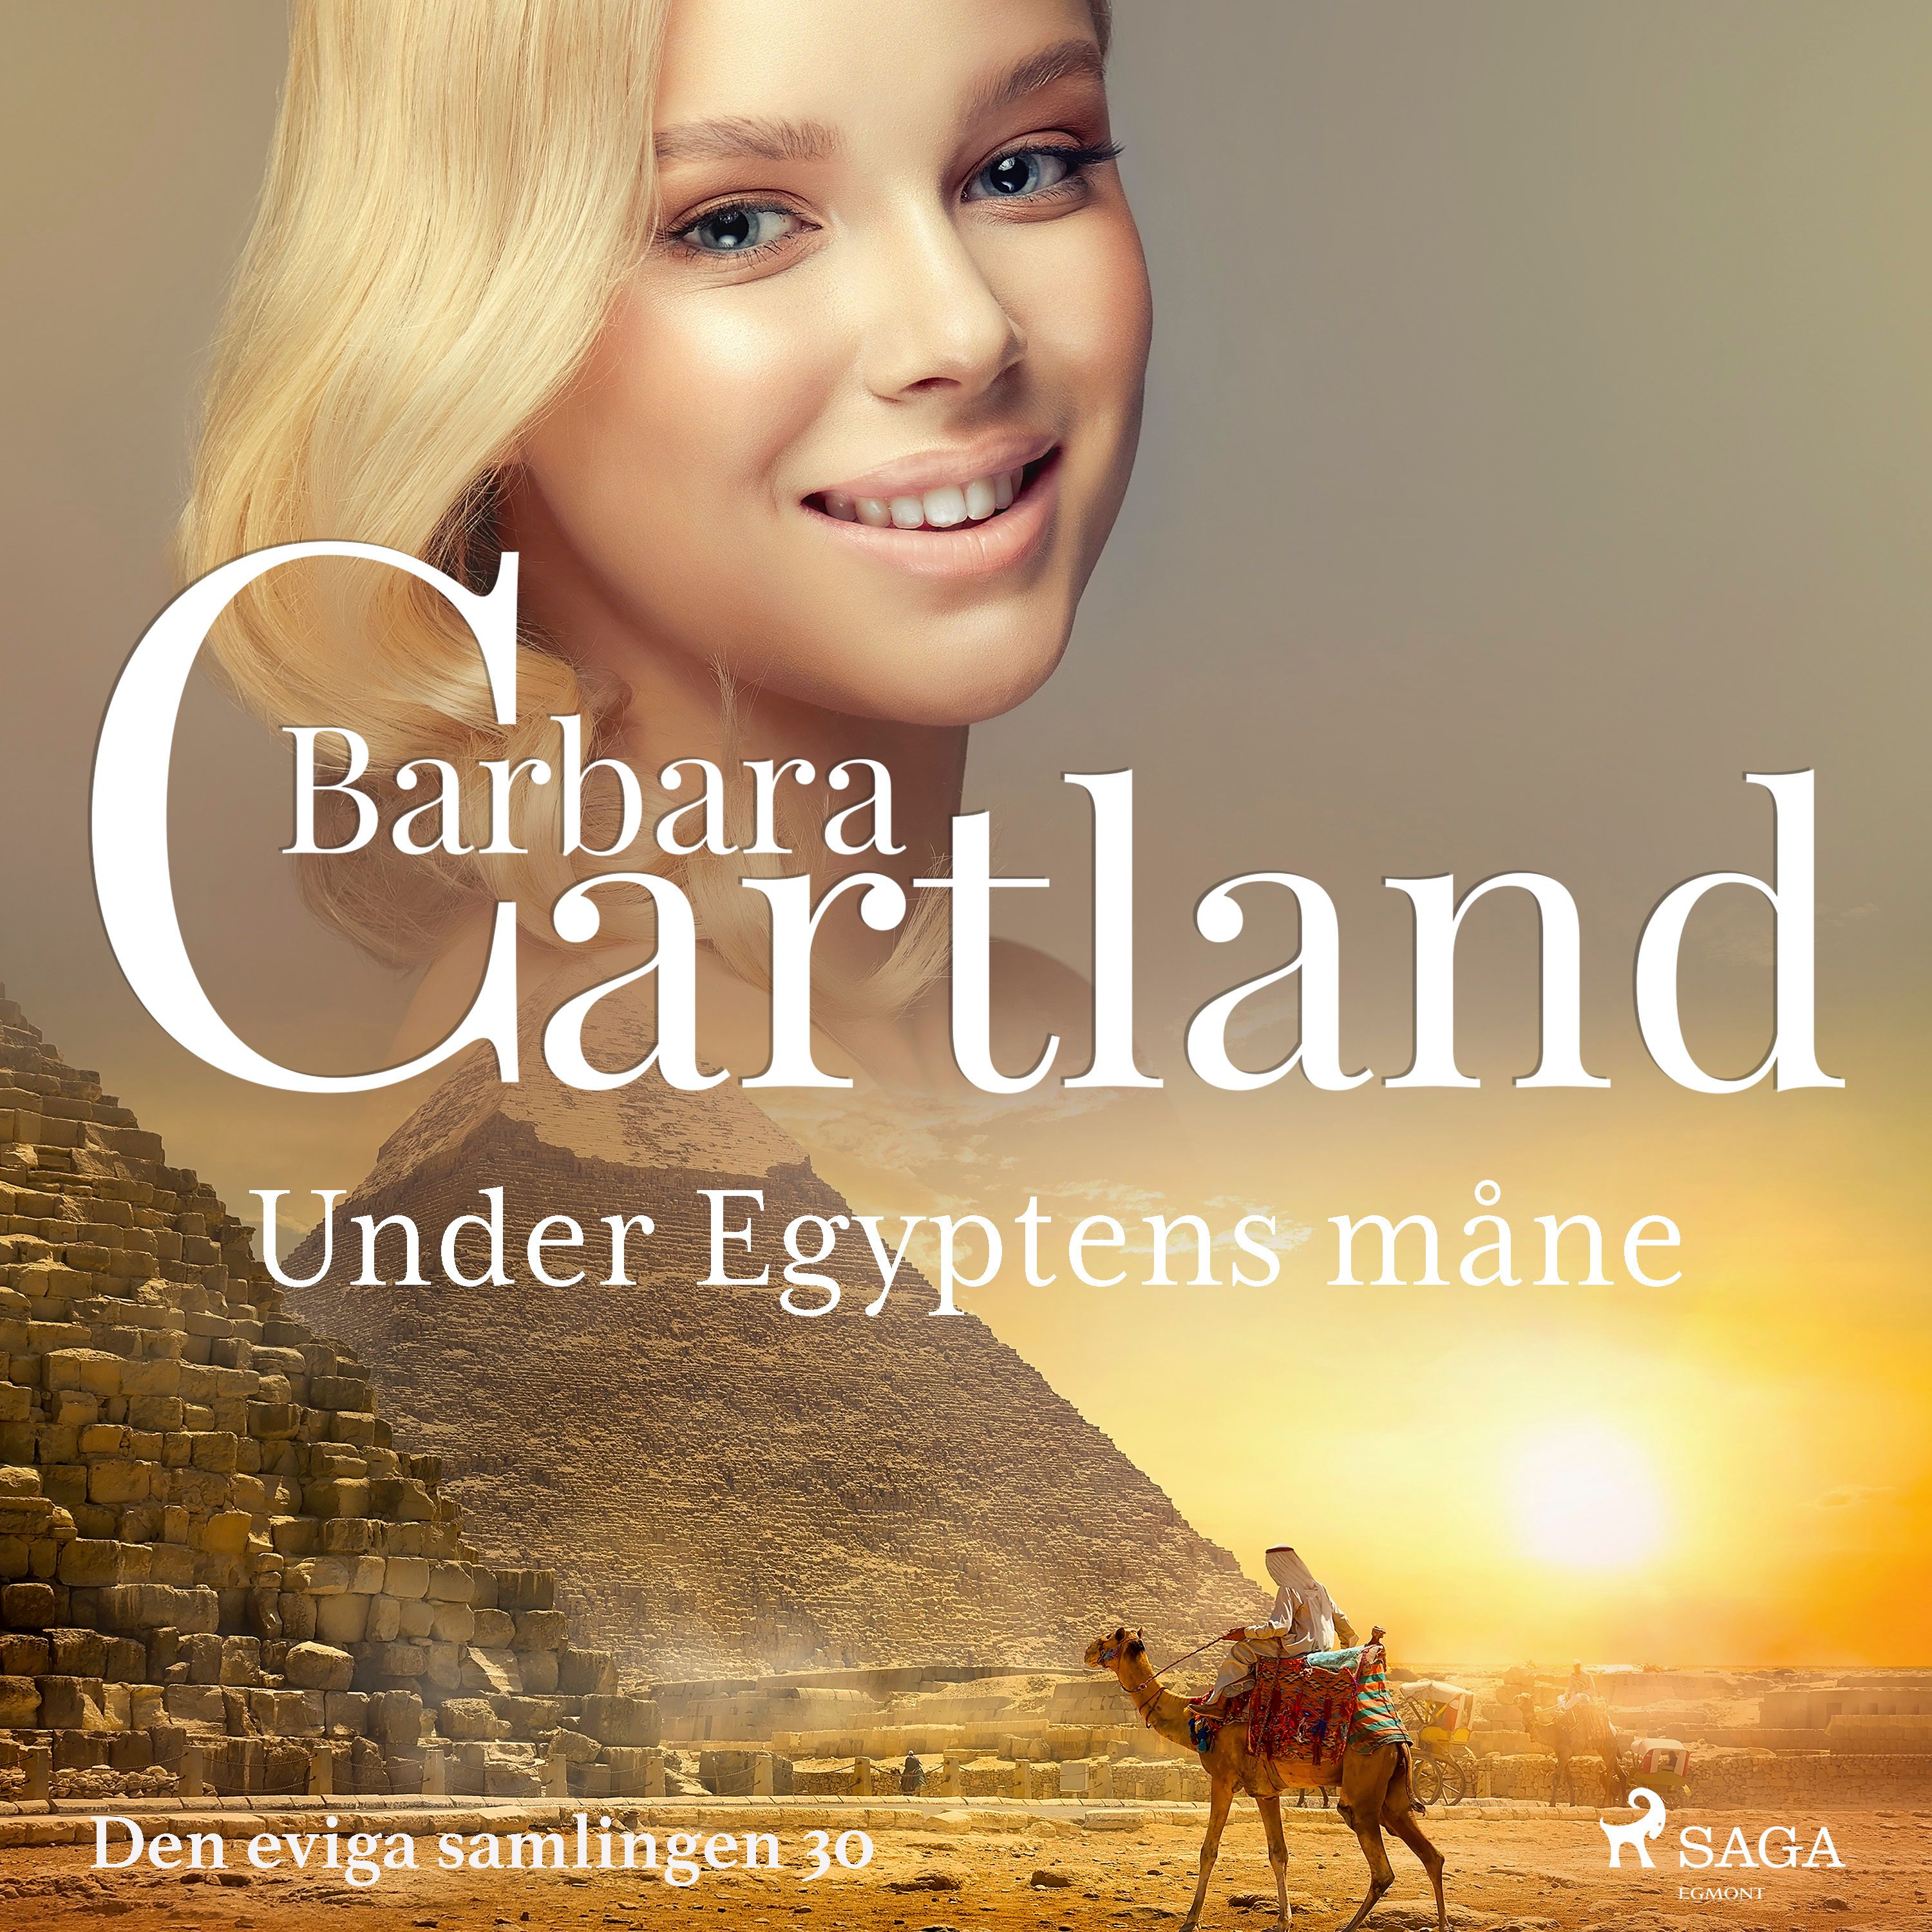 Under Egyptens måne, ljudbok av Barbara Cartland